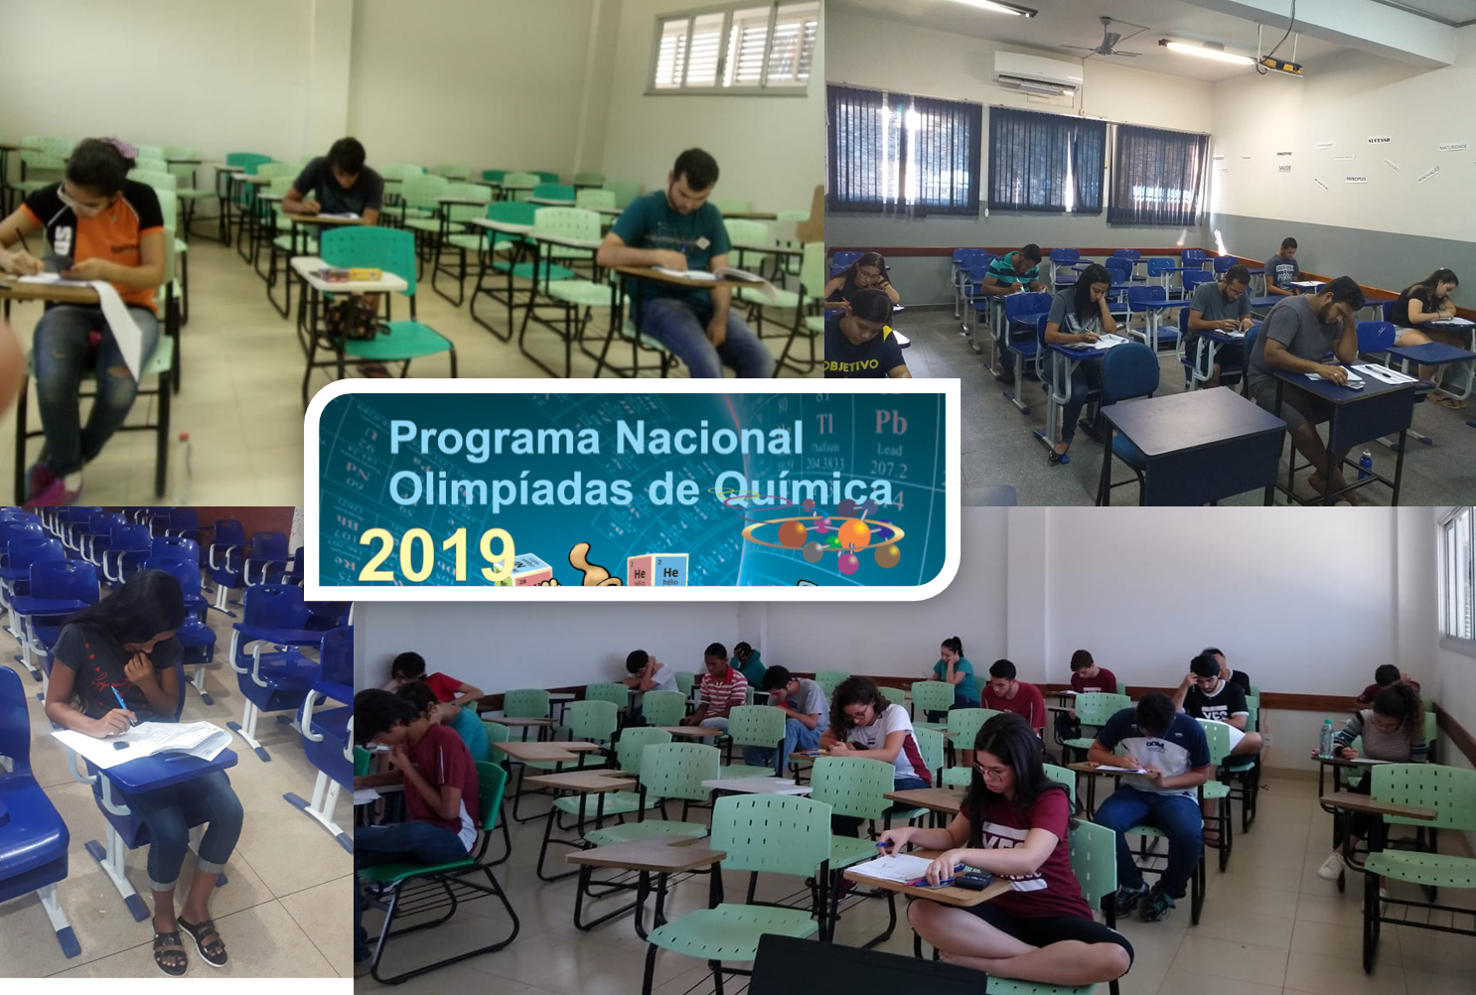 Alunos do Ensino Médio e do Ensino Superior de Química do estado do Tocantins, prestam exame hoje, 24 de agosto, nas Olimpíadas Nacional de Química, OBQ e OBESQ 2019.